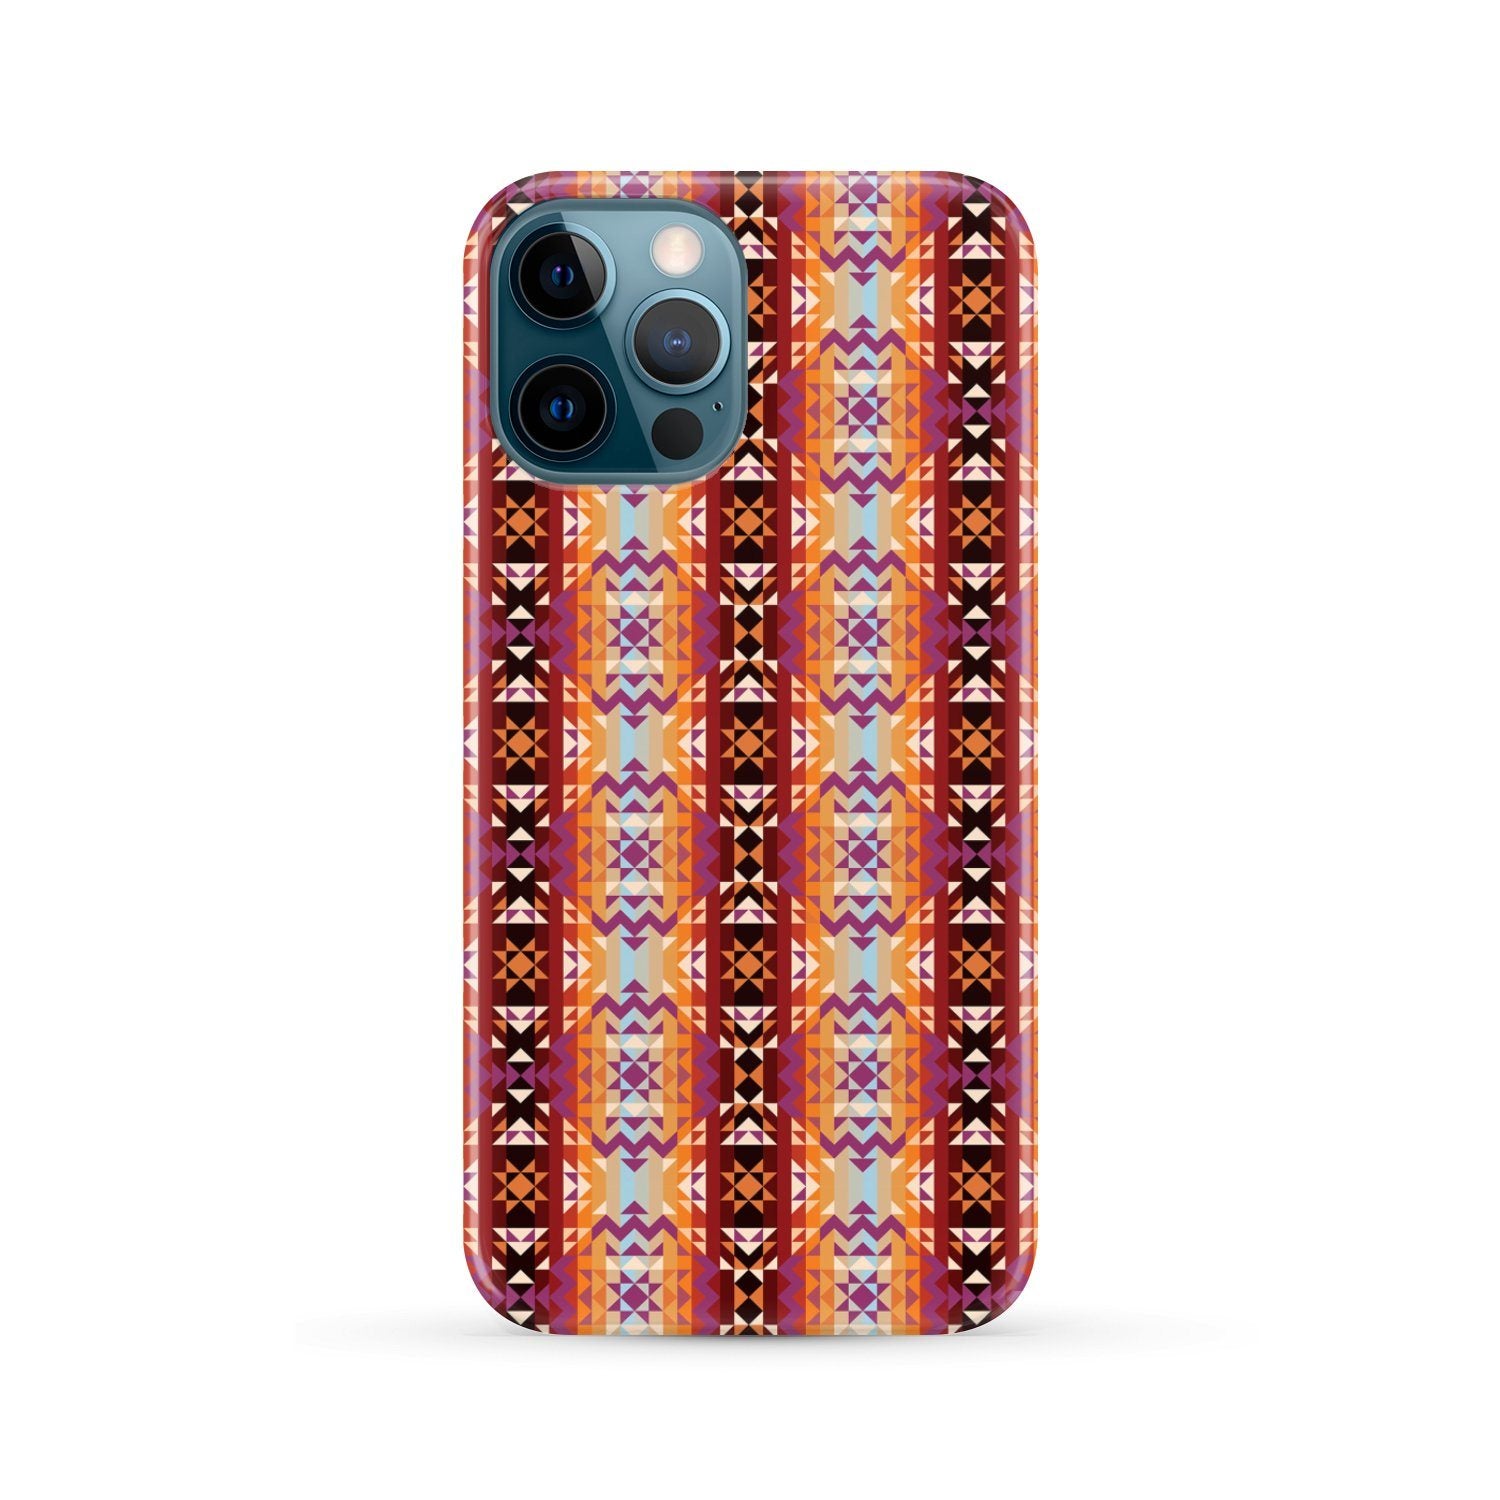 Heatwave Phone Case Phone Case wc-fulfillment iPhone 12 Pro Max 